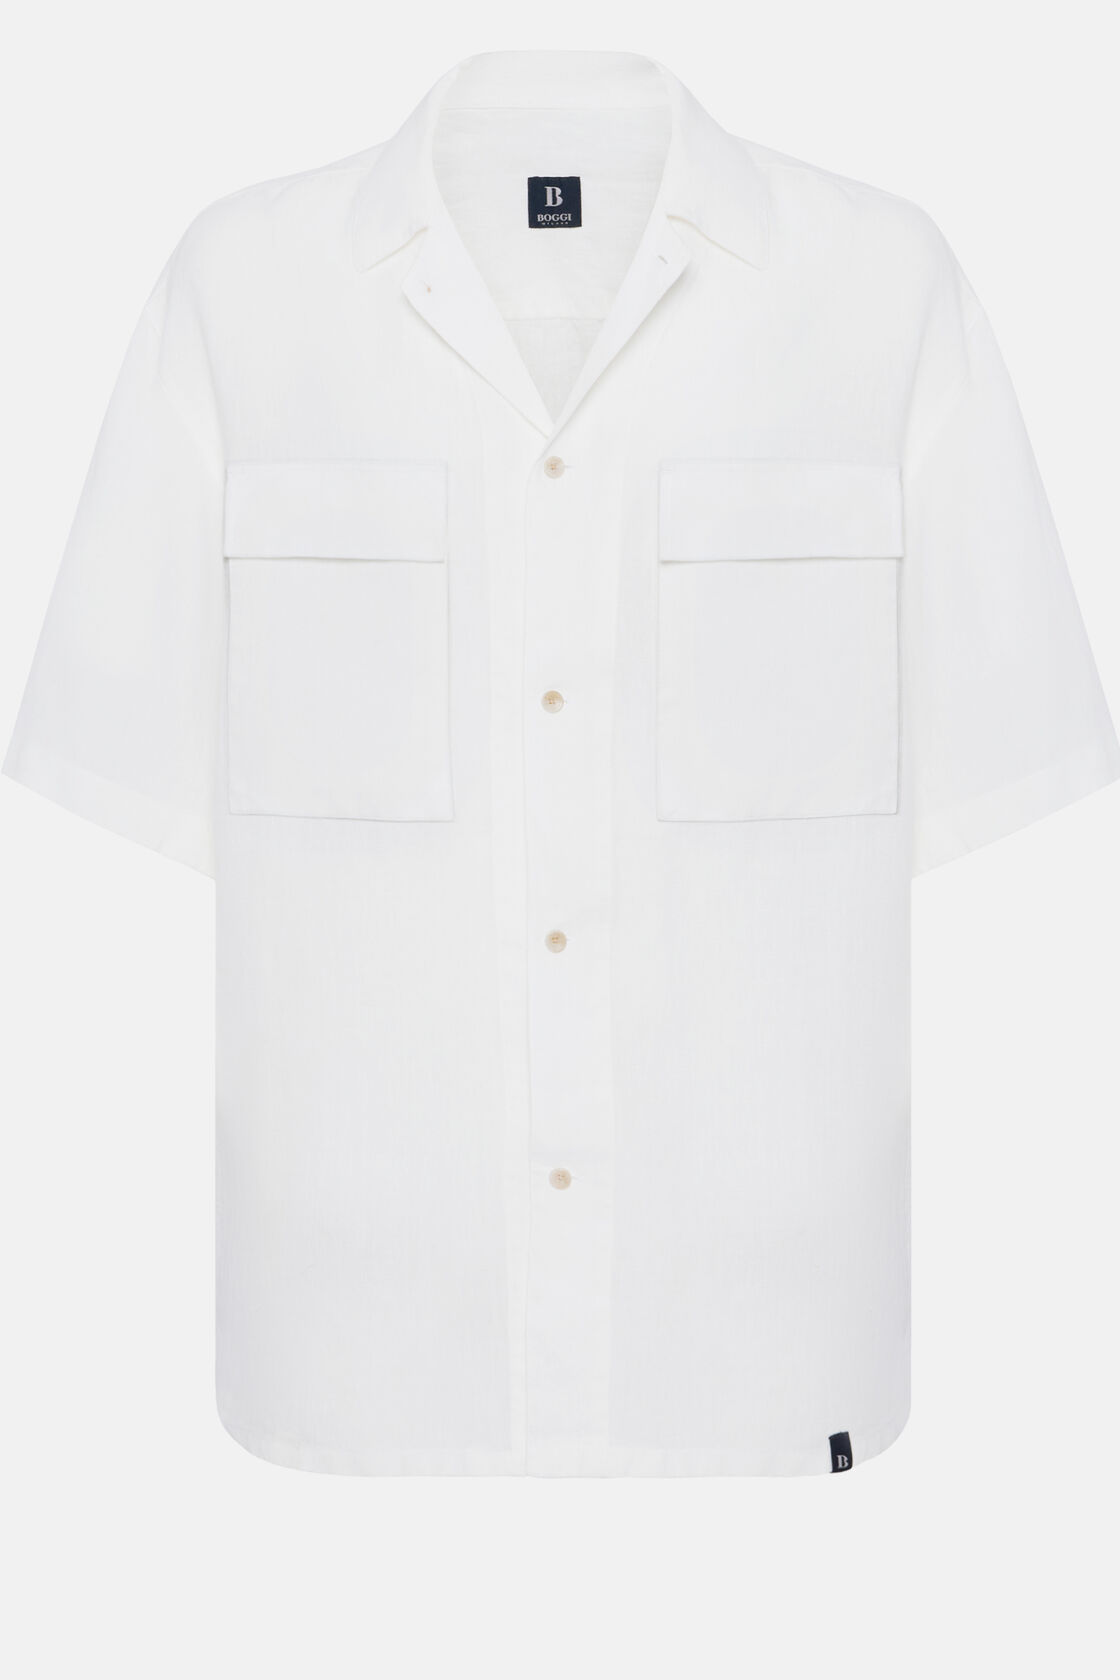 Weißes Oversized-Hemd Aus Leinen Mit Camp-Kragen, Weiß, hi-res